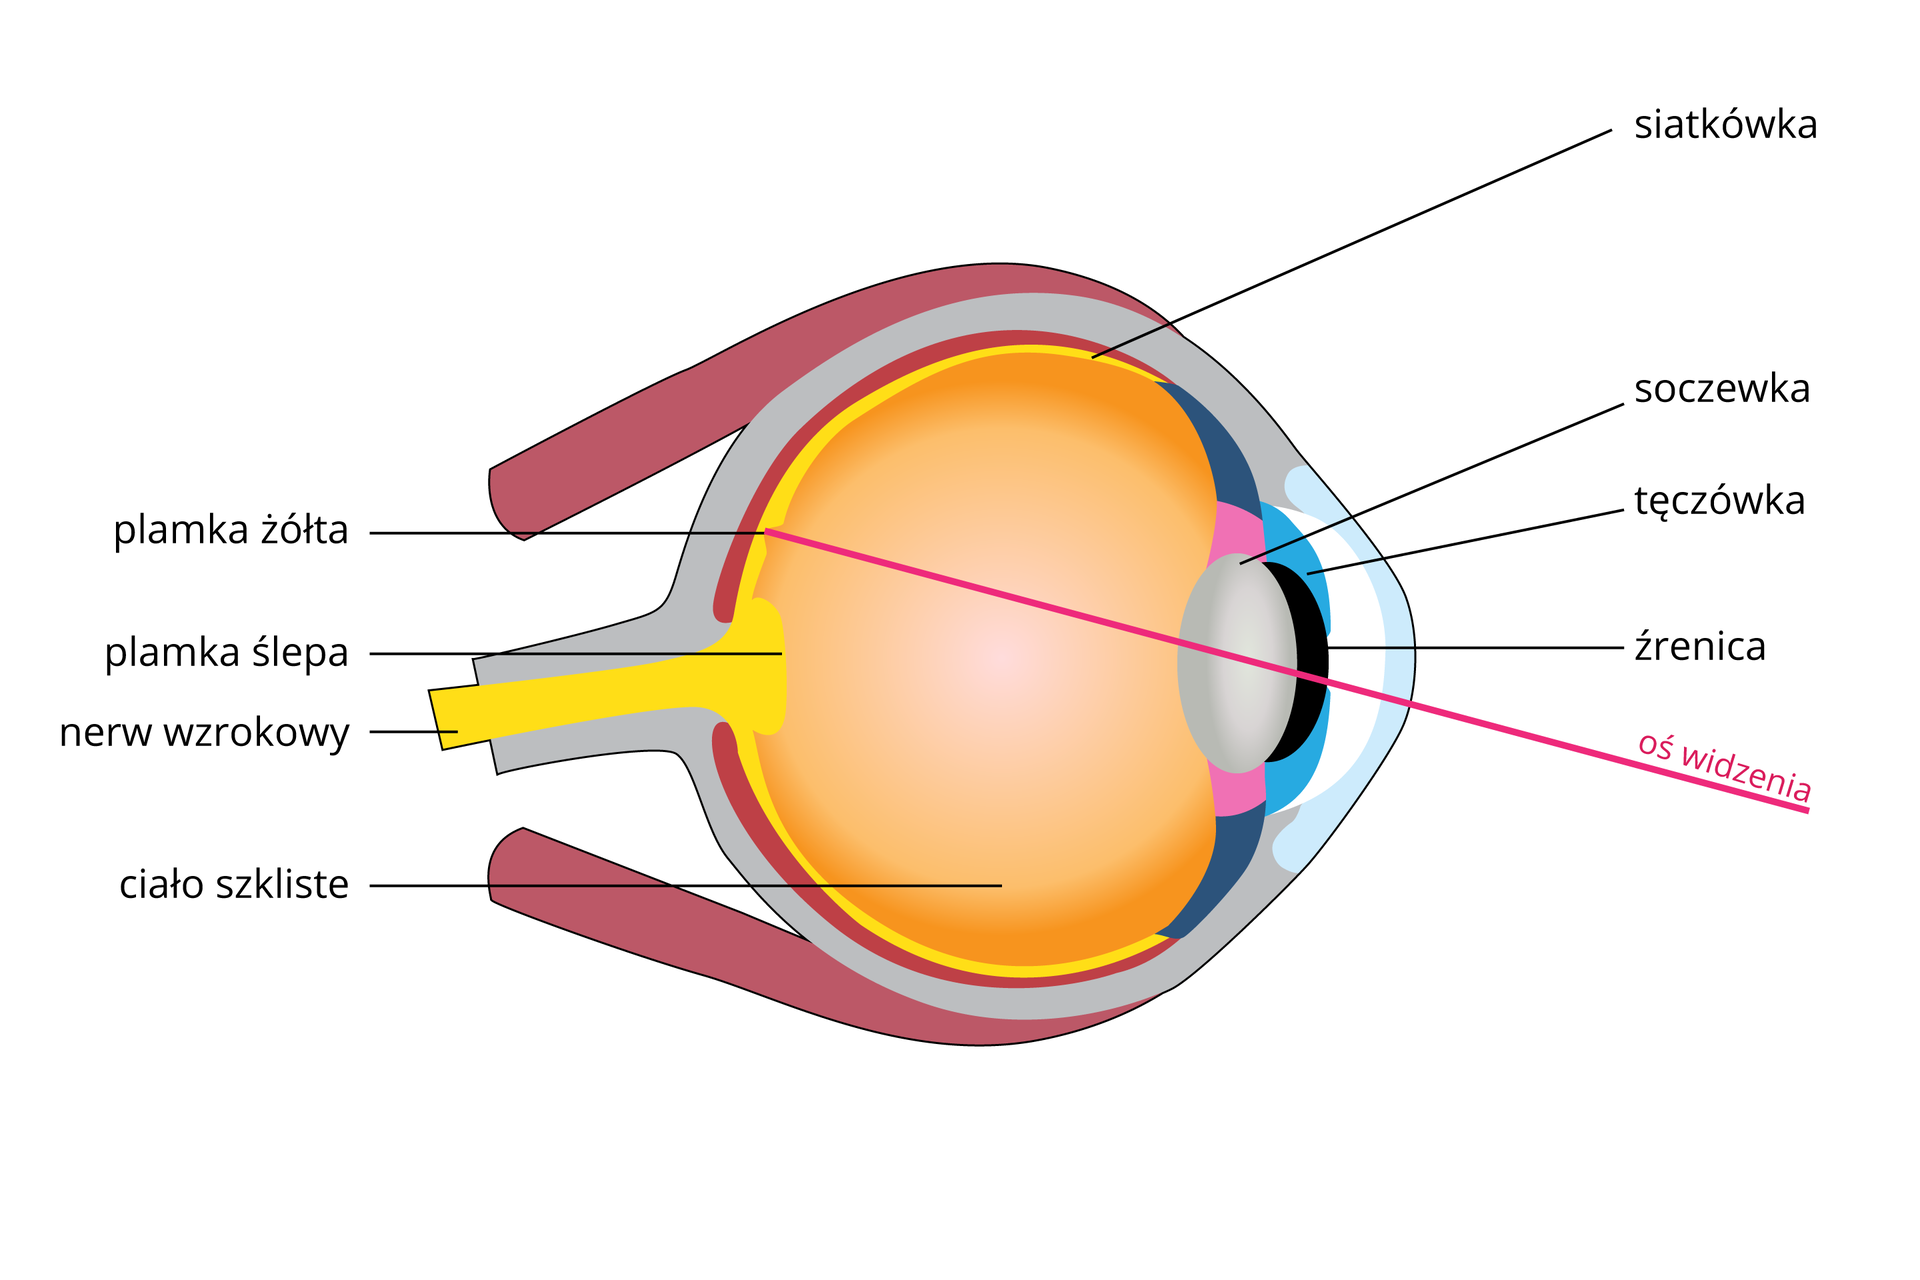 Ilustracja przedstawia schematyczny przekrój przez gałkę oczną. Oko zwrócone w prawo; na rysunku różowa linia oznacza oś widzenia. Z lewej żółty nerw wzrokowy ze zgrubieniem na końcu, plamką ślepą. Żółta jest także siatkówka. Na niej punkt najlepszego widzenia, plamka żółta. Wnętrze gałki ocznej wypełnione pomarańczowym ciałem szklistym. Z prawej szara soczewka za czarnym otworem źrenicy w turkusowej tęczówce.